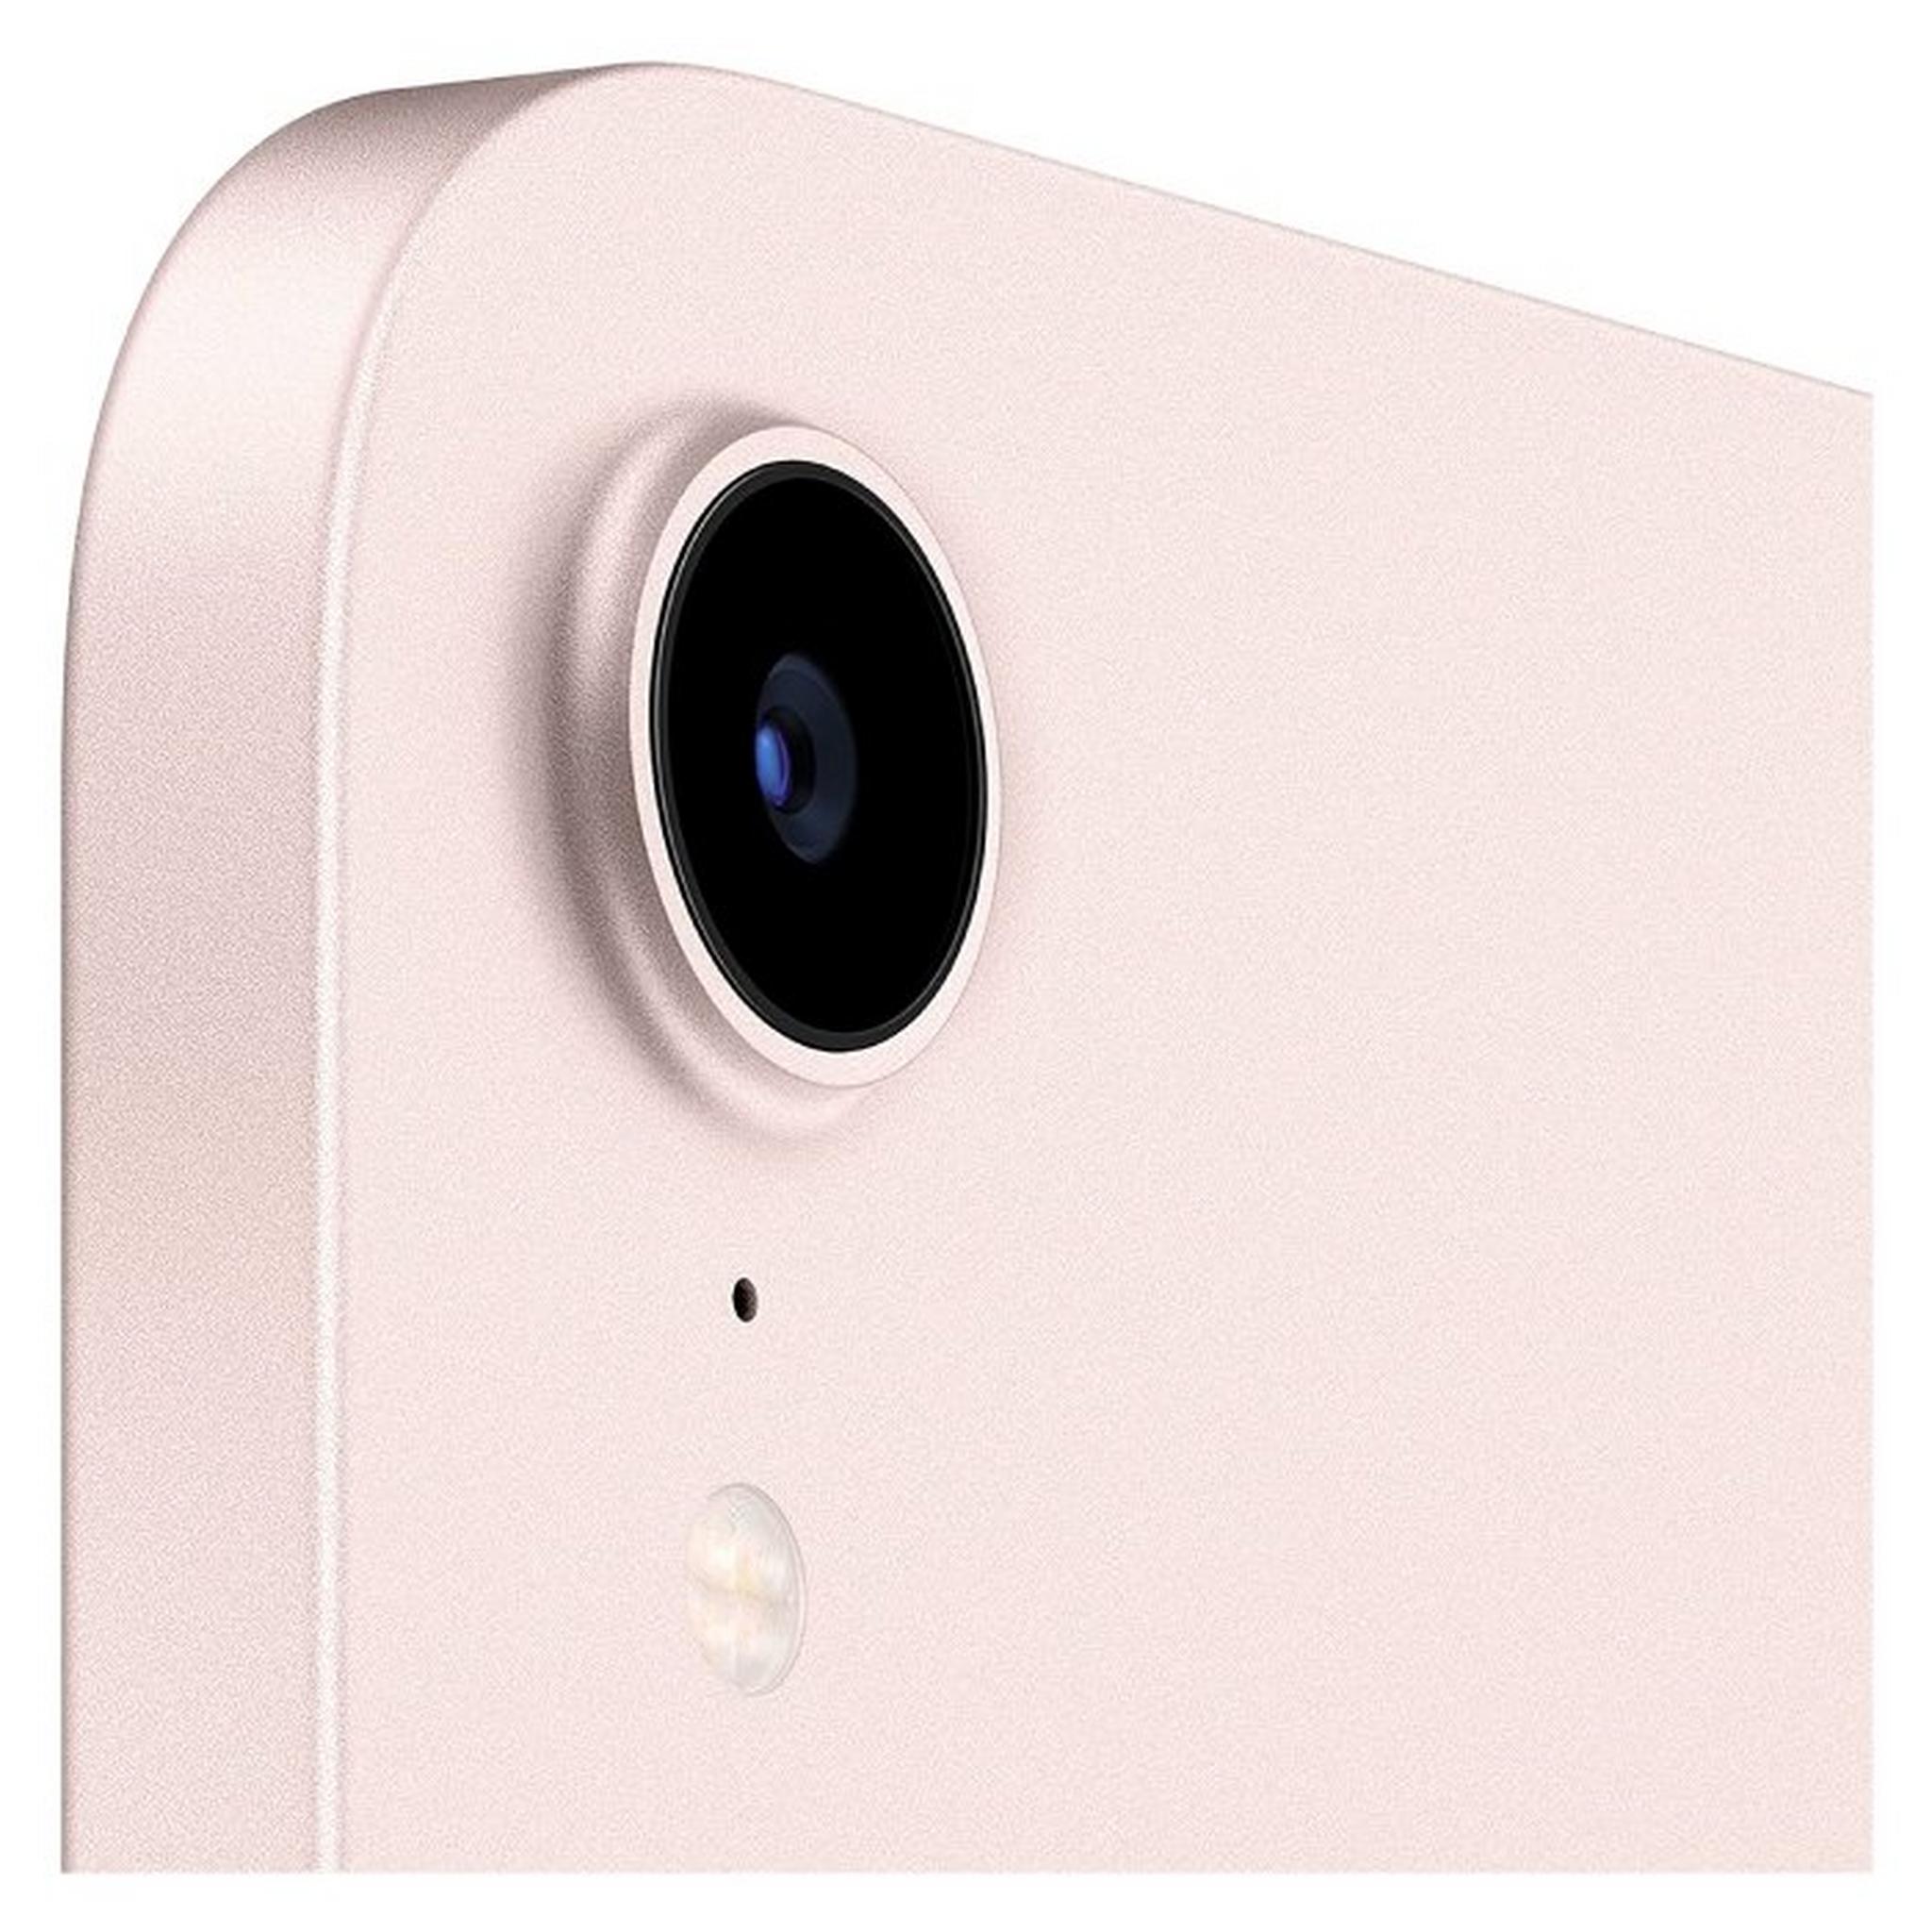 Apple iPad Mini 2021 WiFi 64GB - Pink